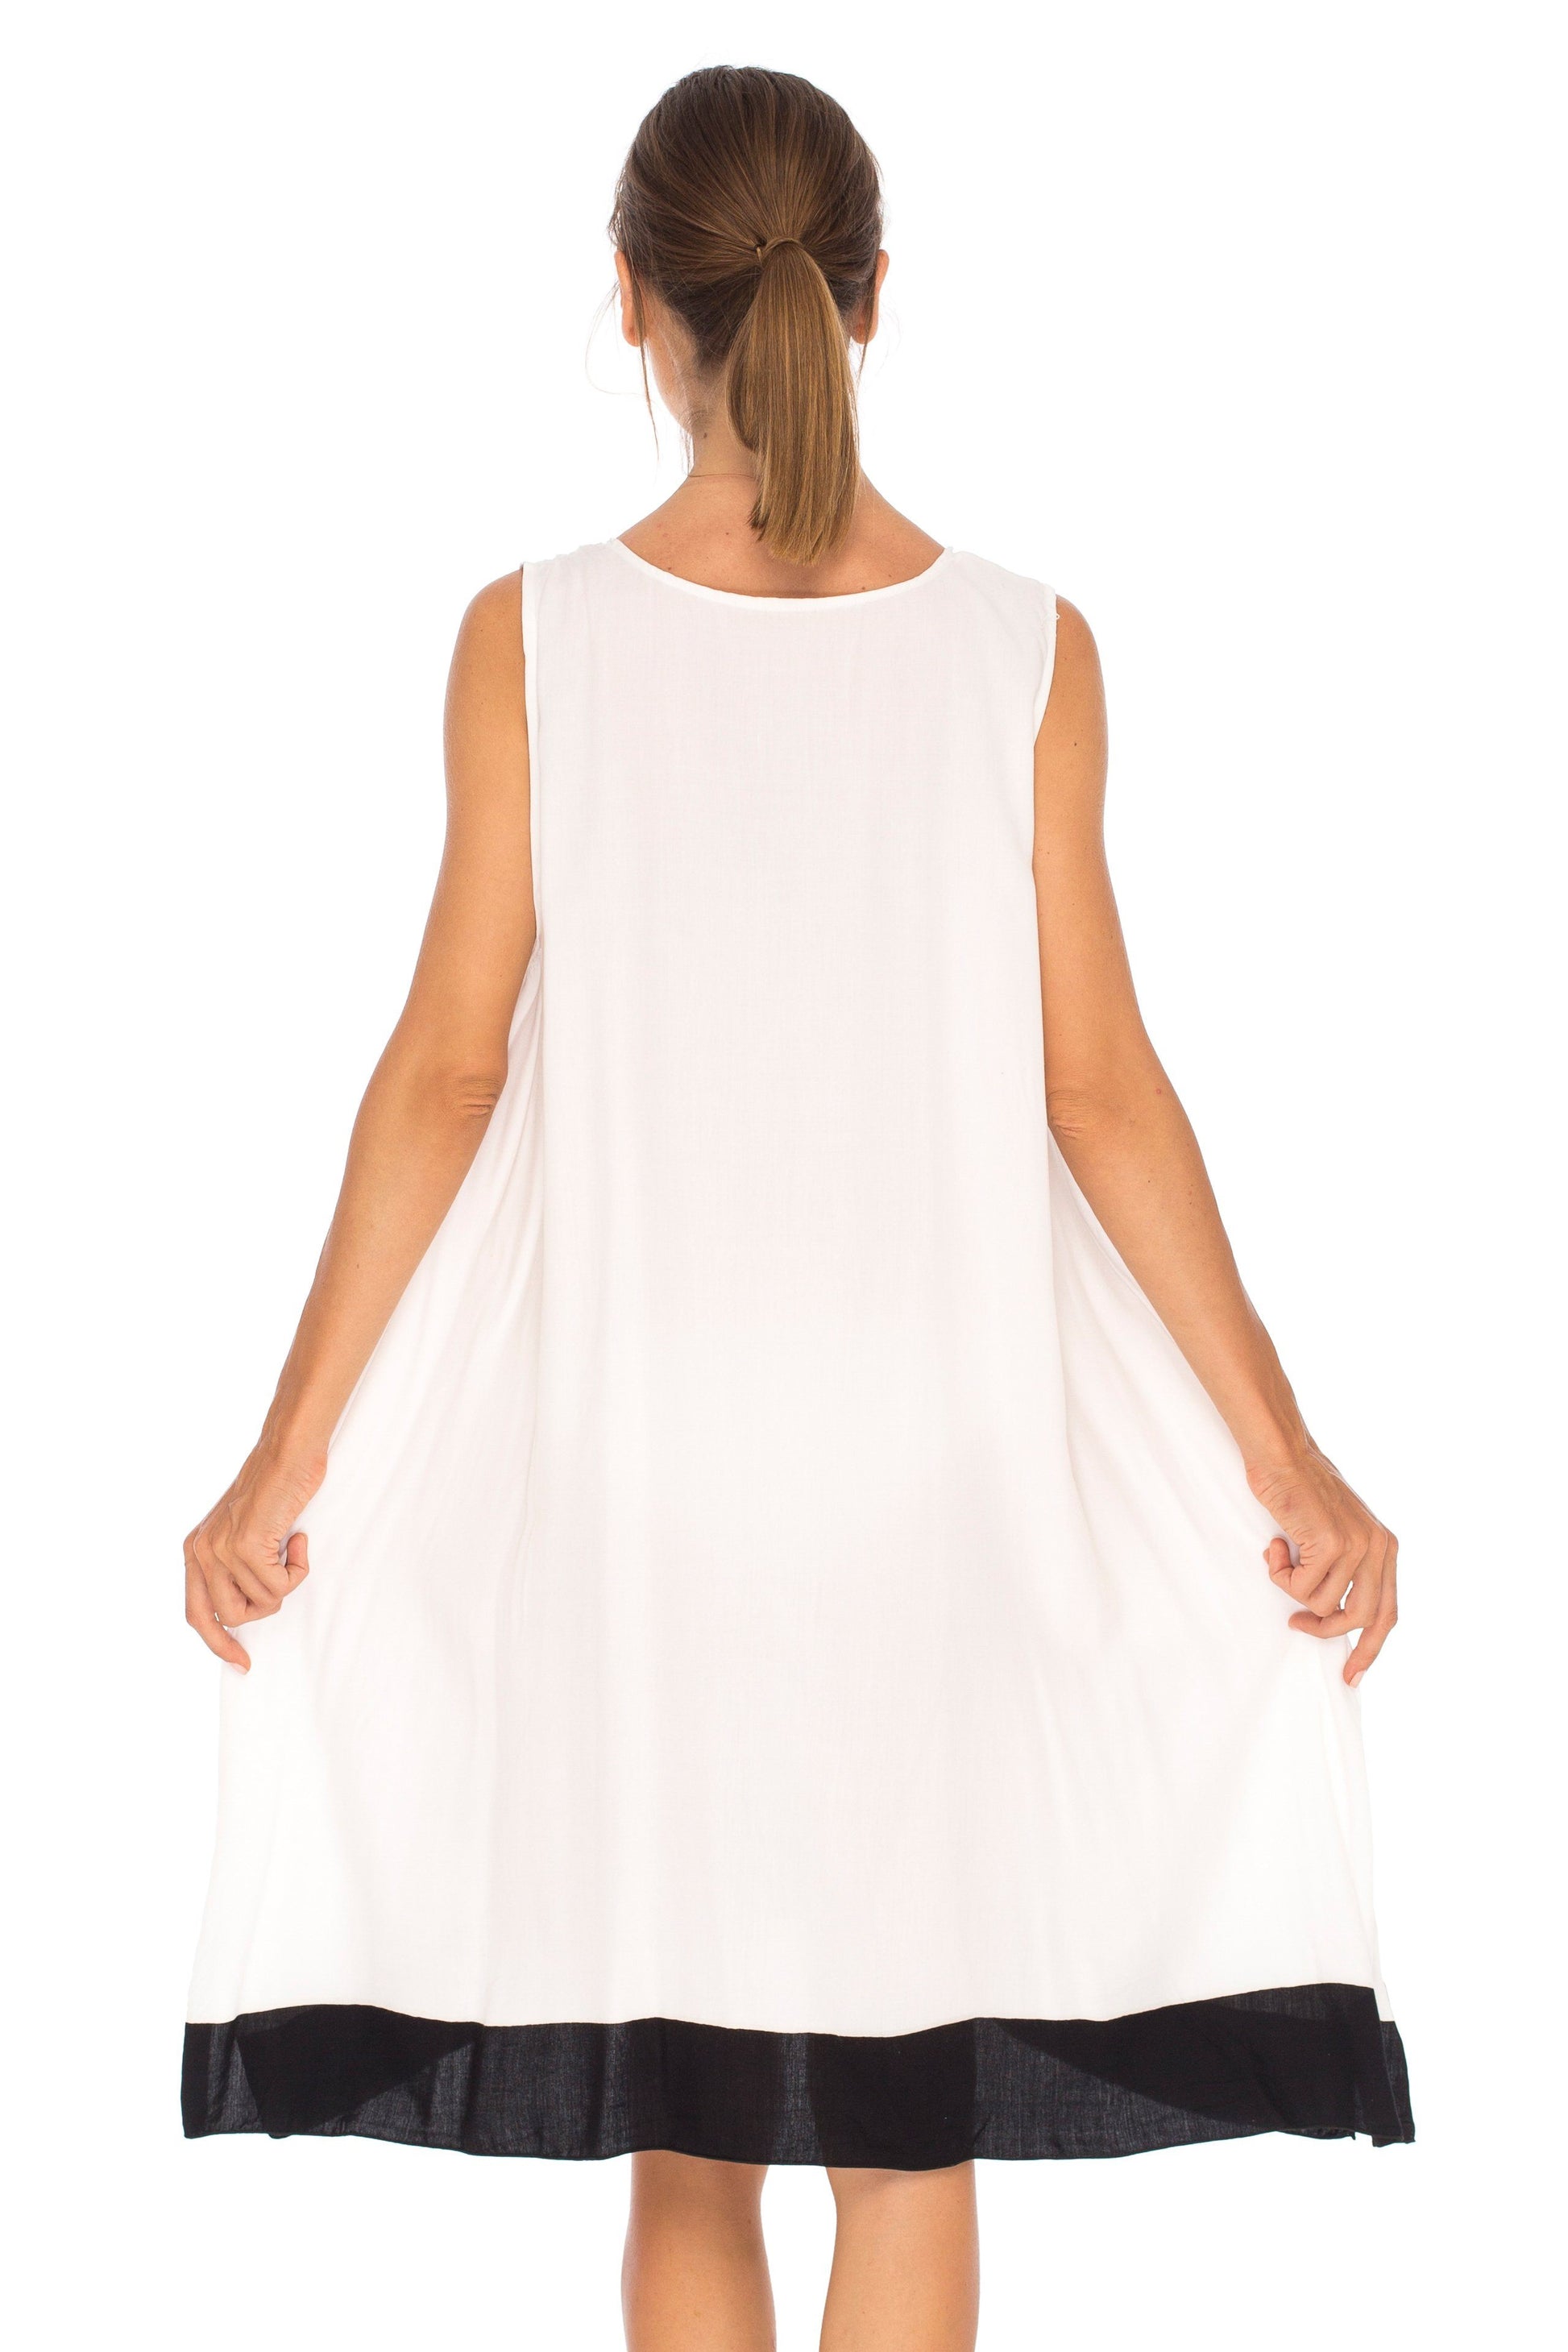 Hand Painted Tribal Design Short sleeveless summer Dress Love-Shu-Shi-white